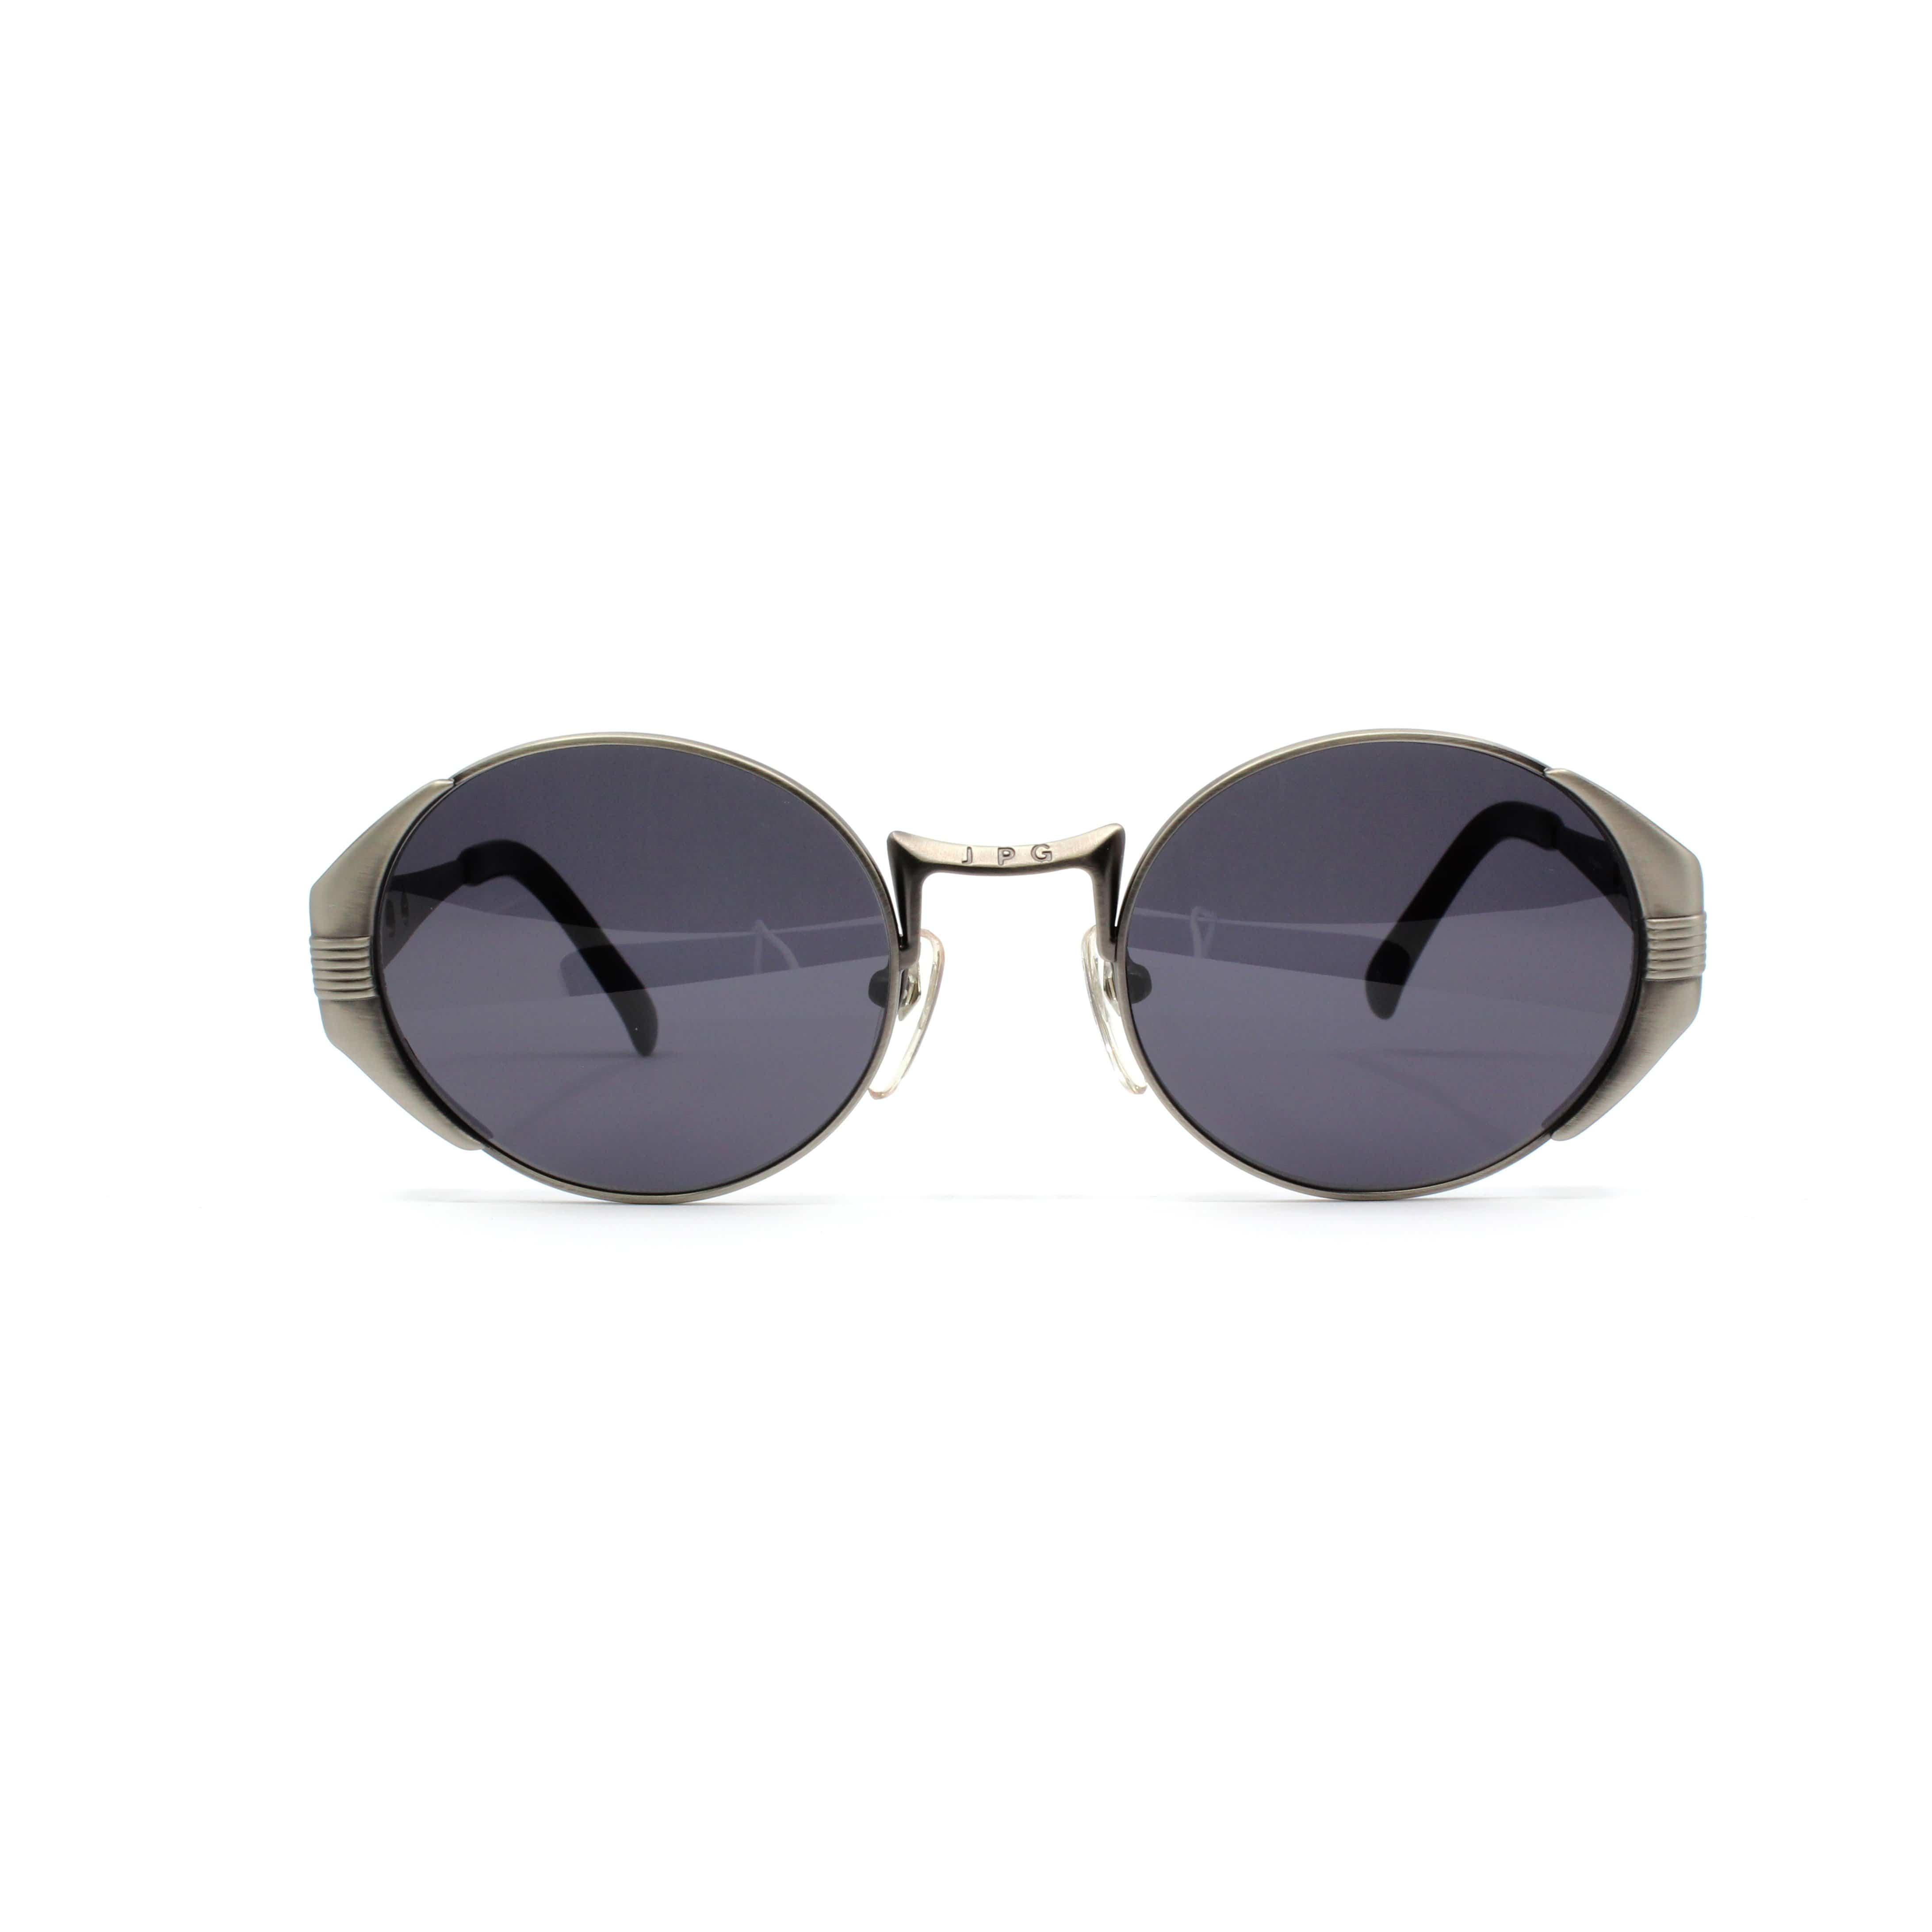 Antique Silver Vintage Jean Paul Gaultier 56-3174 Sunglasses